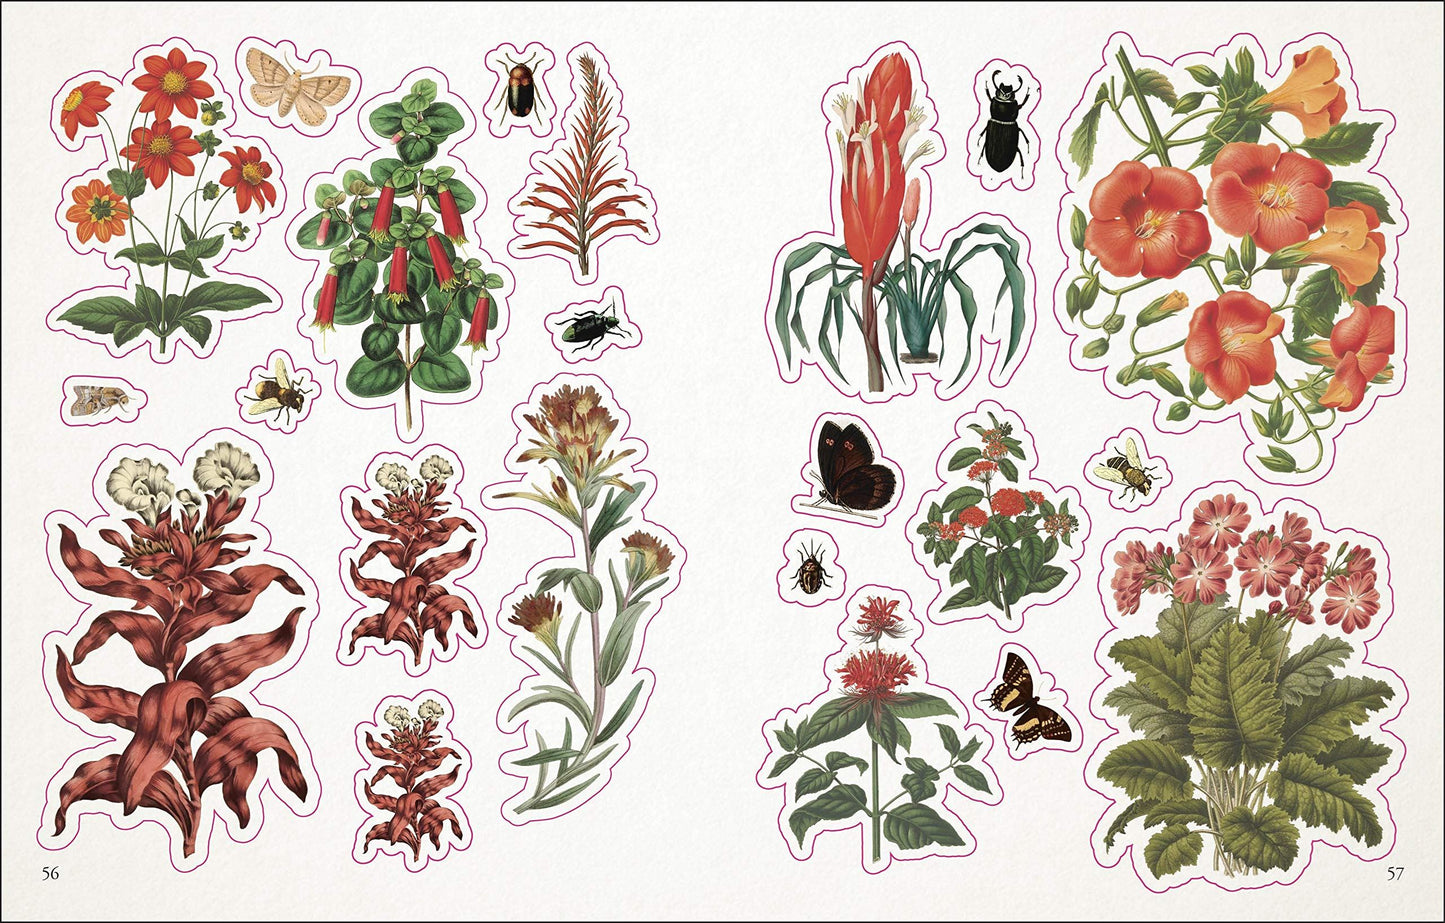 Botanists Sticker Anthology